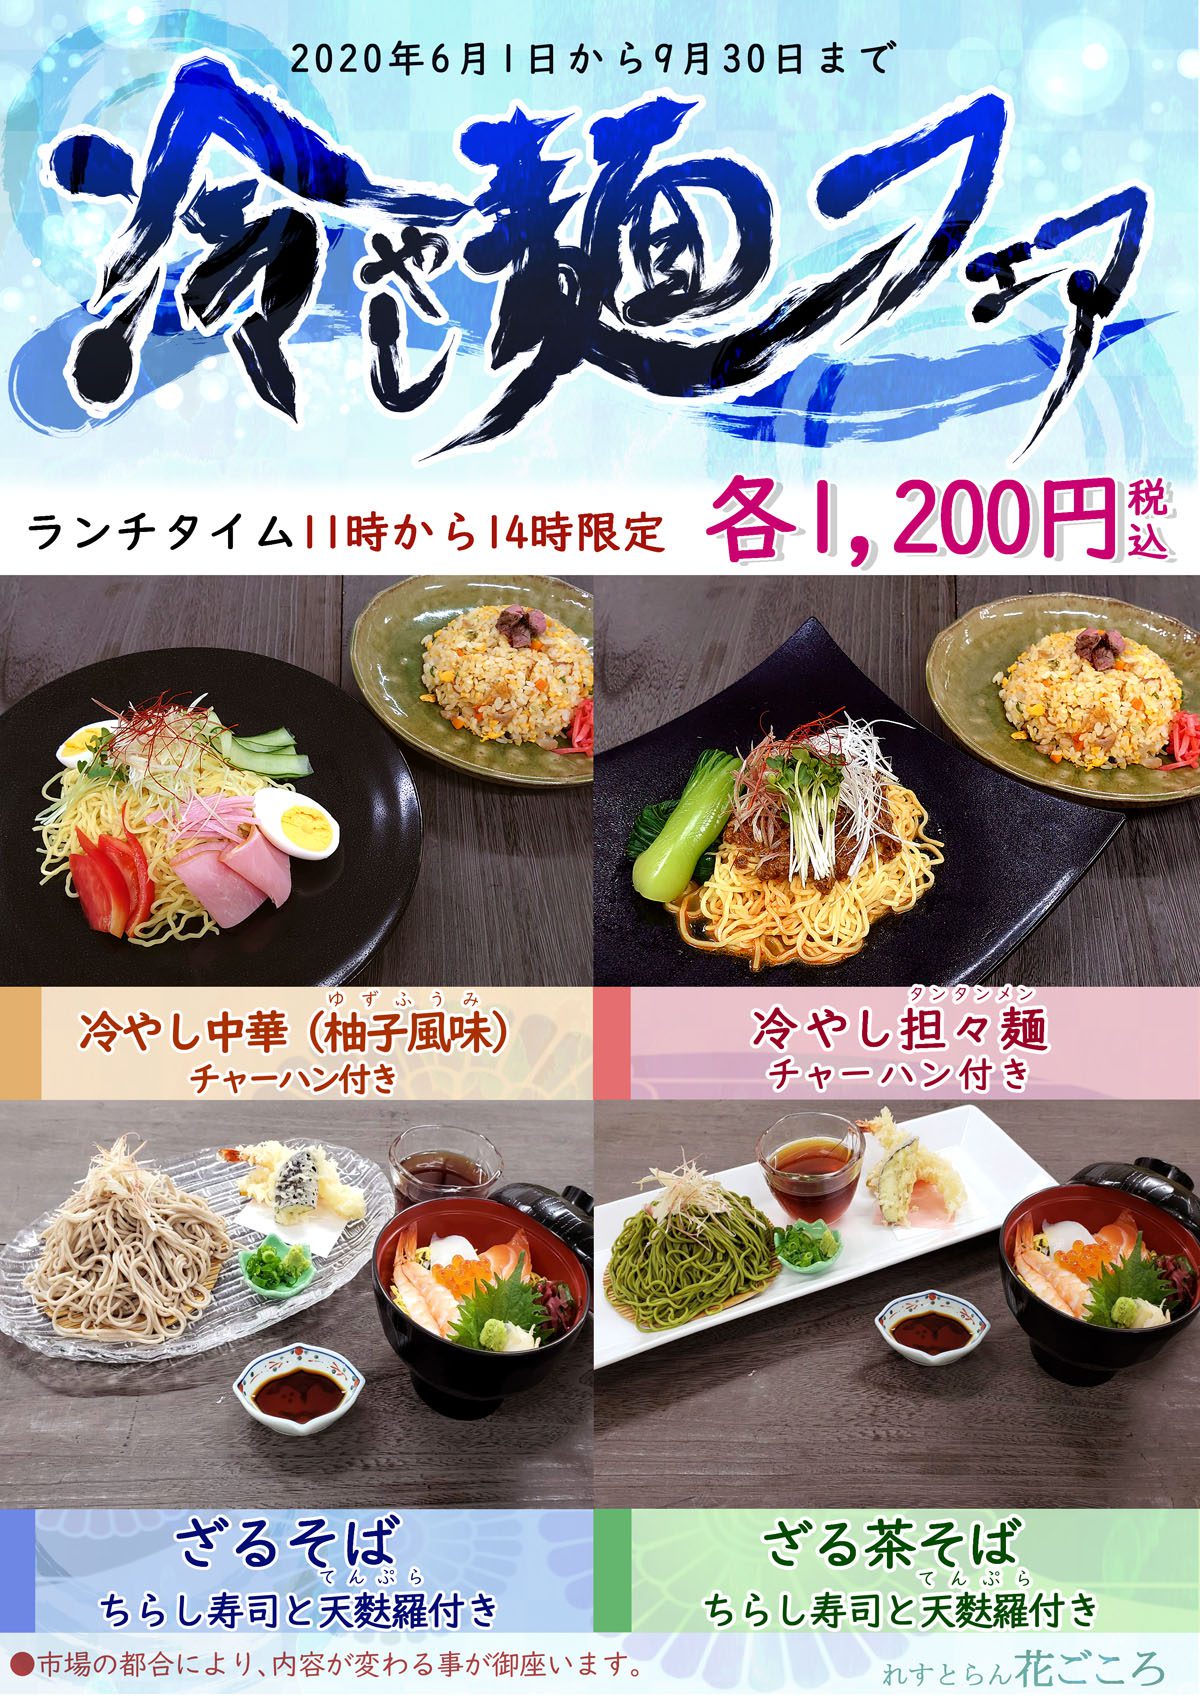 のどごしうれしい冷やし麺フェアを2020年9月30日まで実施中。ランチタイム11:00～14:00限定。選べる4品が各1,200円。冷やし中華チャーハン付き、冷やし担々麺チャーハン付き、ざるそばのちらし寿司と天ぷら付き、ざる茶そばのちらし寿司と天ぷら付き。